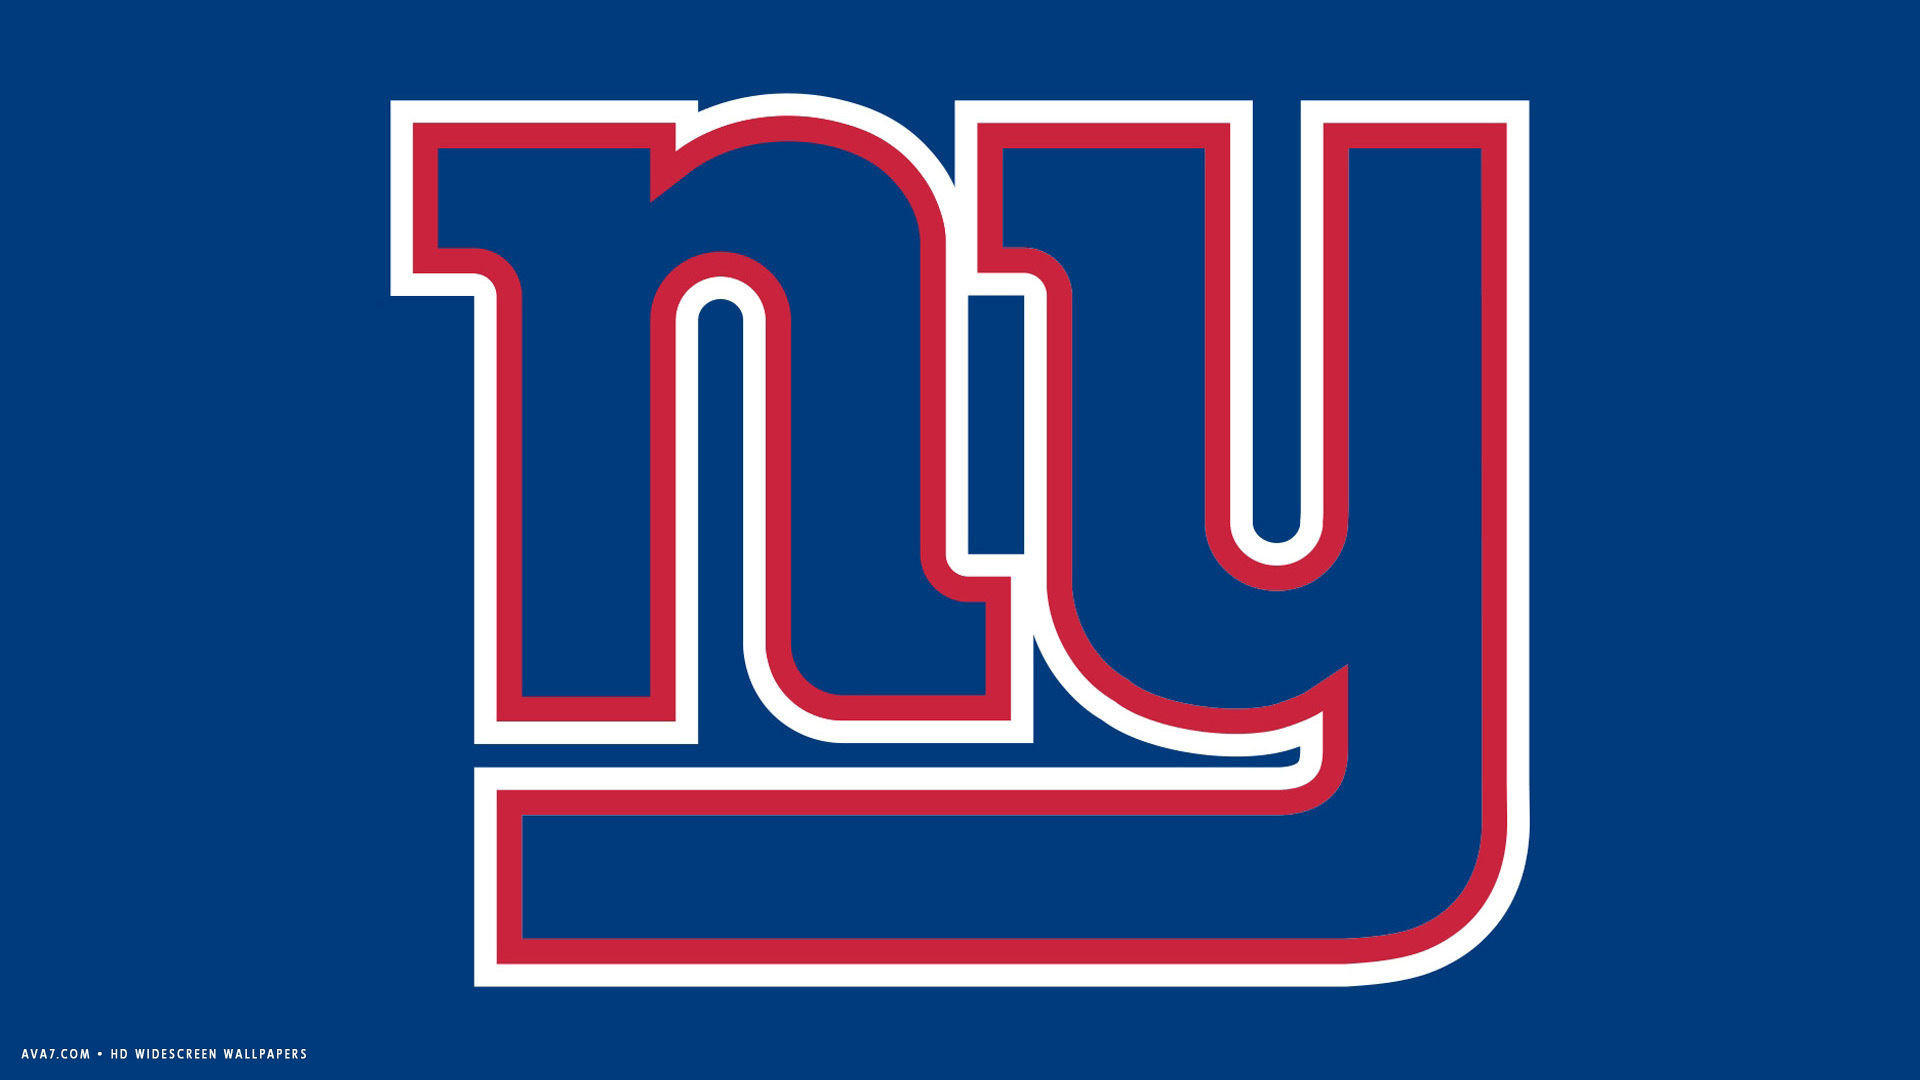 1920x1080 ny giants logo hd wallpaper ny giants logo hd wallpaper; new york giants nfl  football team